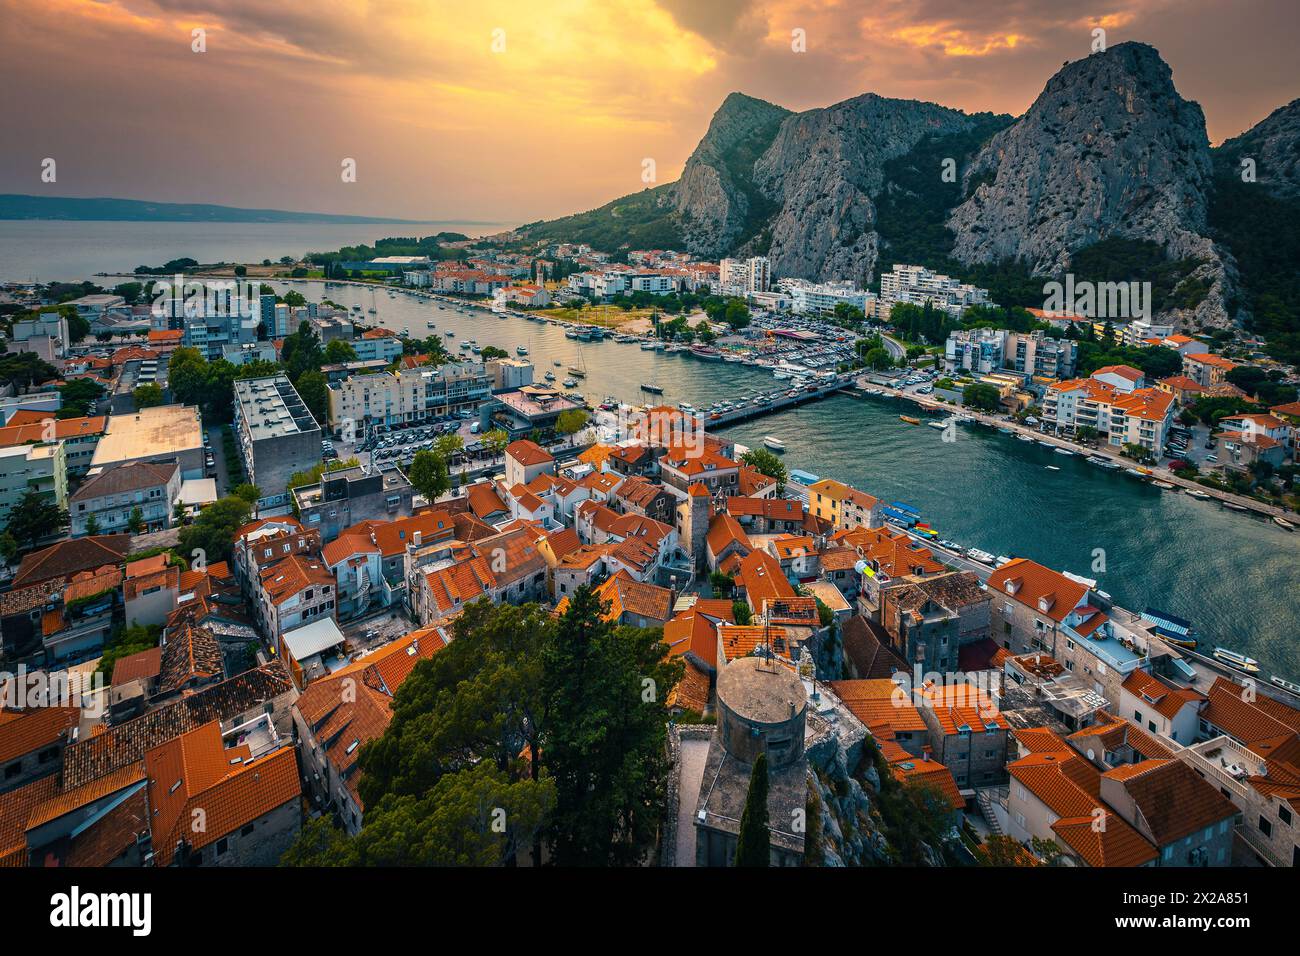 Belle vue avec mer Adriatique et spectaculaire rivière Cetina de la forteresse au coucher du soleil, omis, Dalmatie, Croatie, Europe Banque D'Images